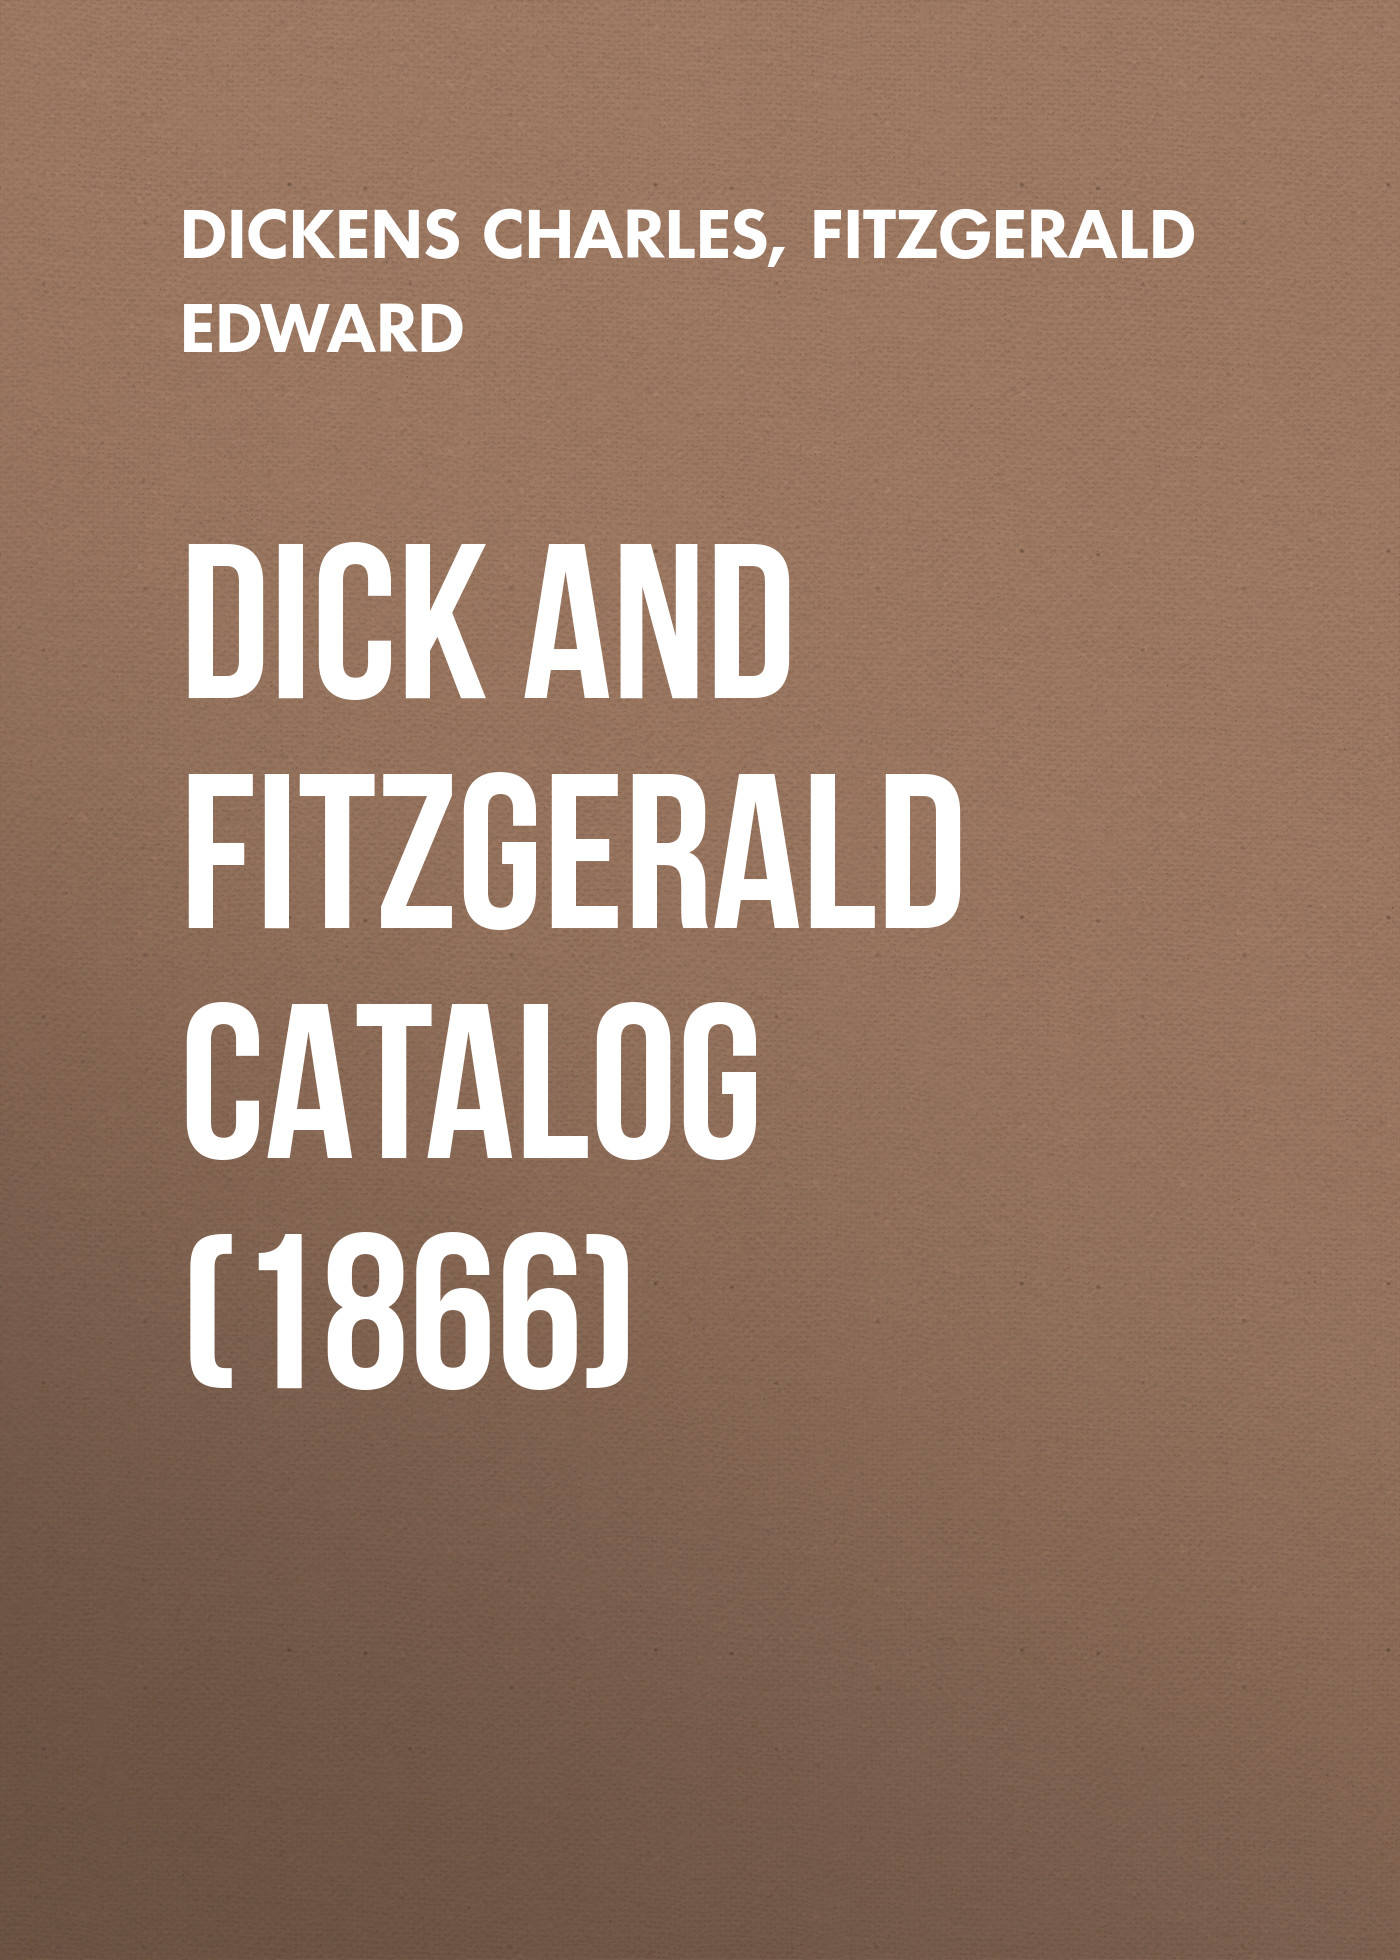 Книга Dick and Fitzgerald Catalog (1866) из серии , созданная Edward FitzGerald, Charles Dickens, может относится к жанру Зарубежная классика. Стоимость электронной книги Dick and Fitzgerald Catalog (1866) с идентификатором 23165475 составляет 0 руб.